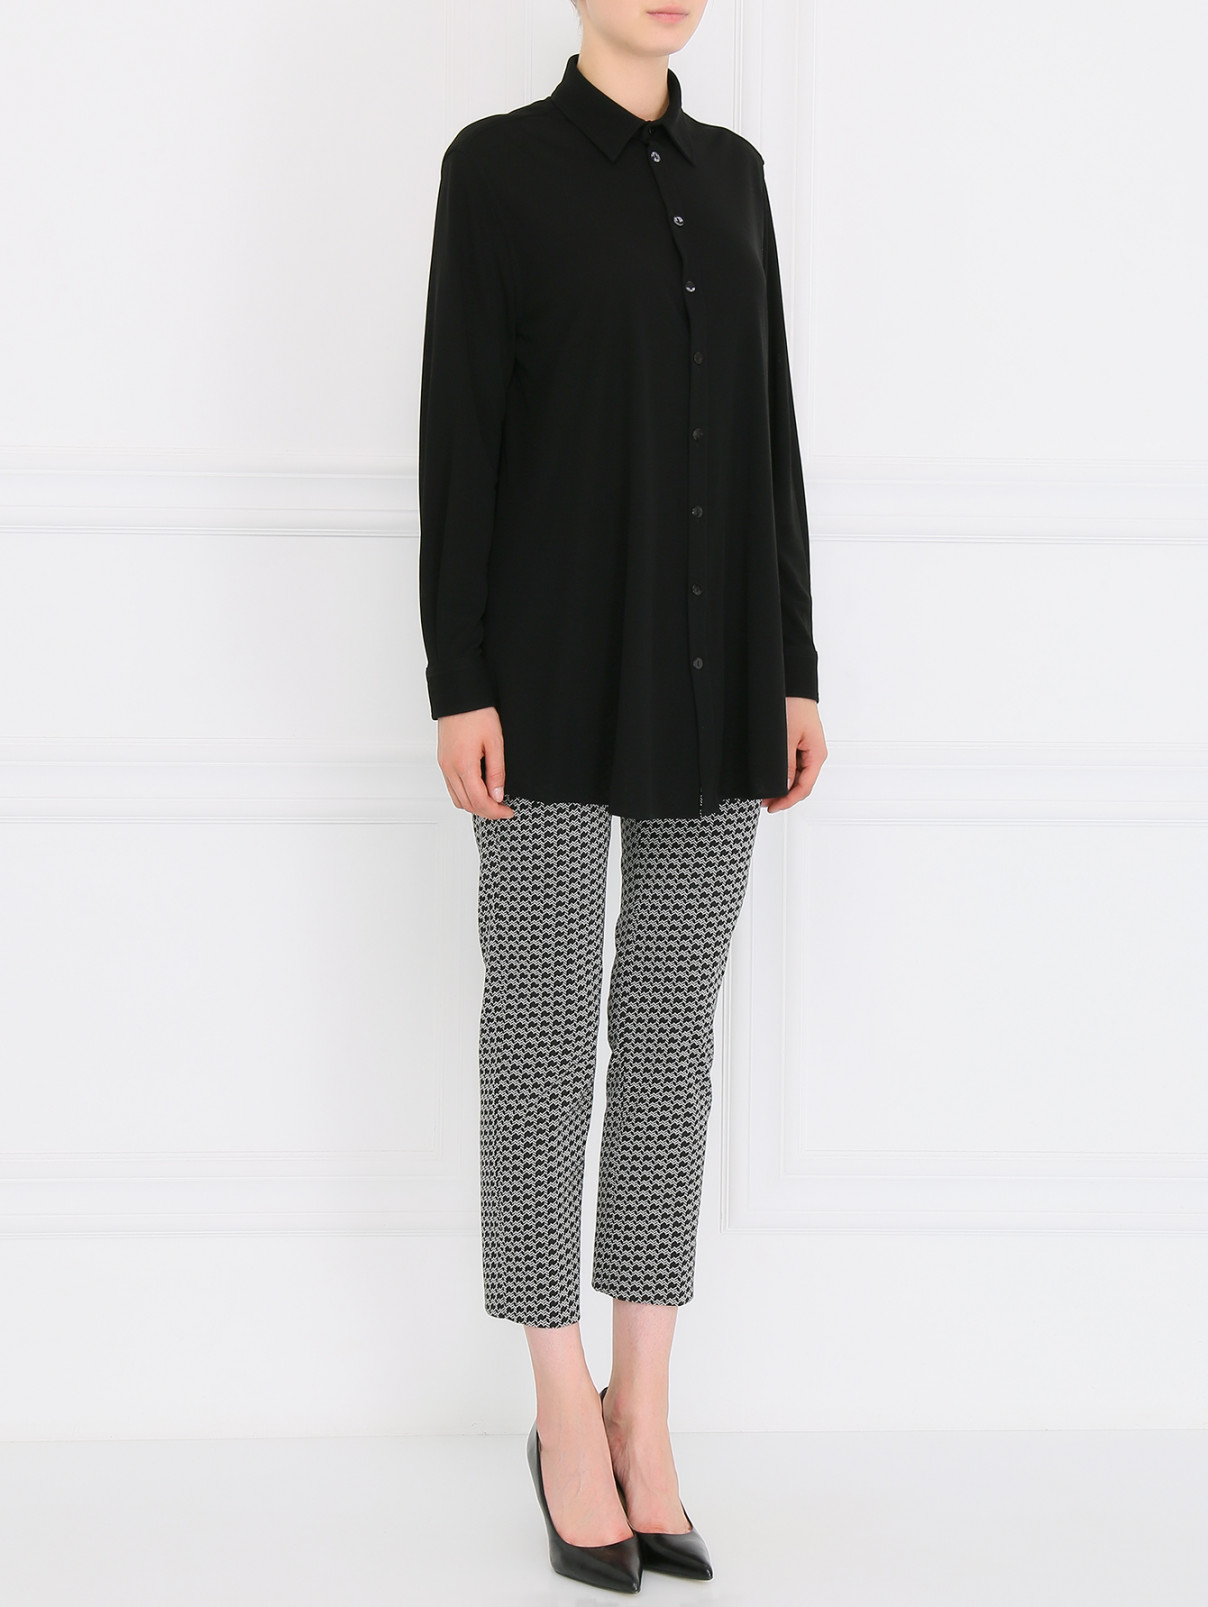 Блуза с длинными рукавами Jean Paul Gaultier  –  Модель Общий вид  – Цвет:  Черный